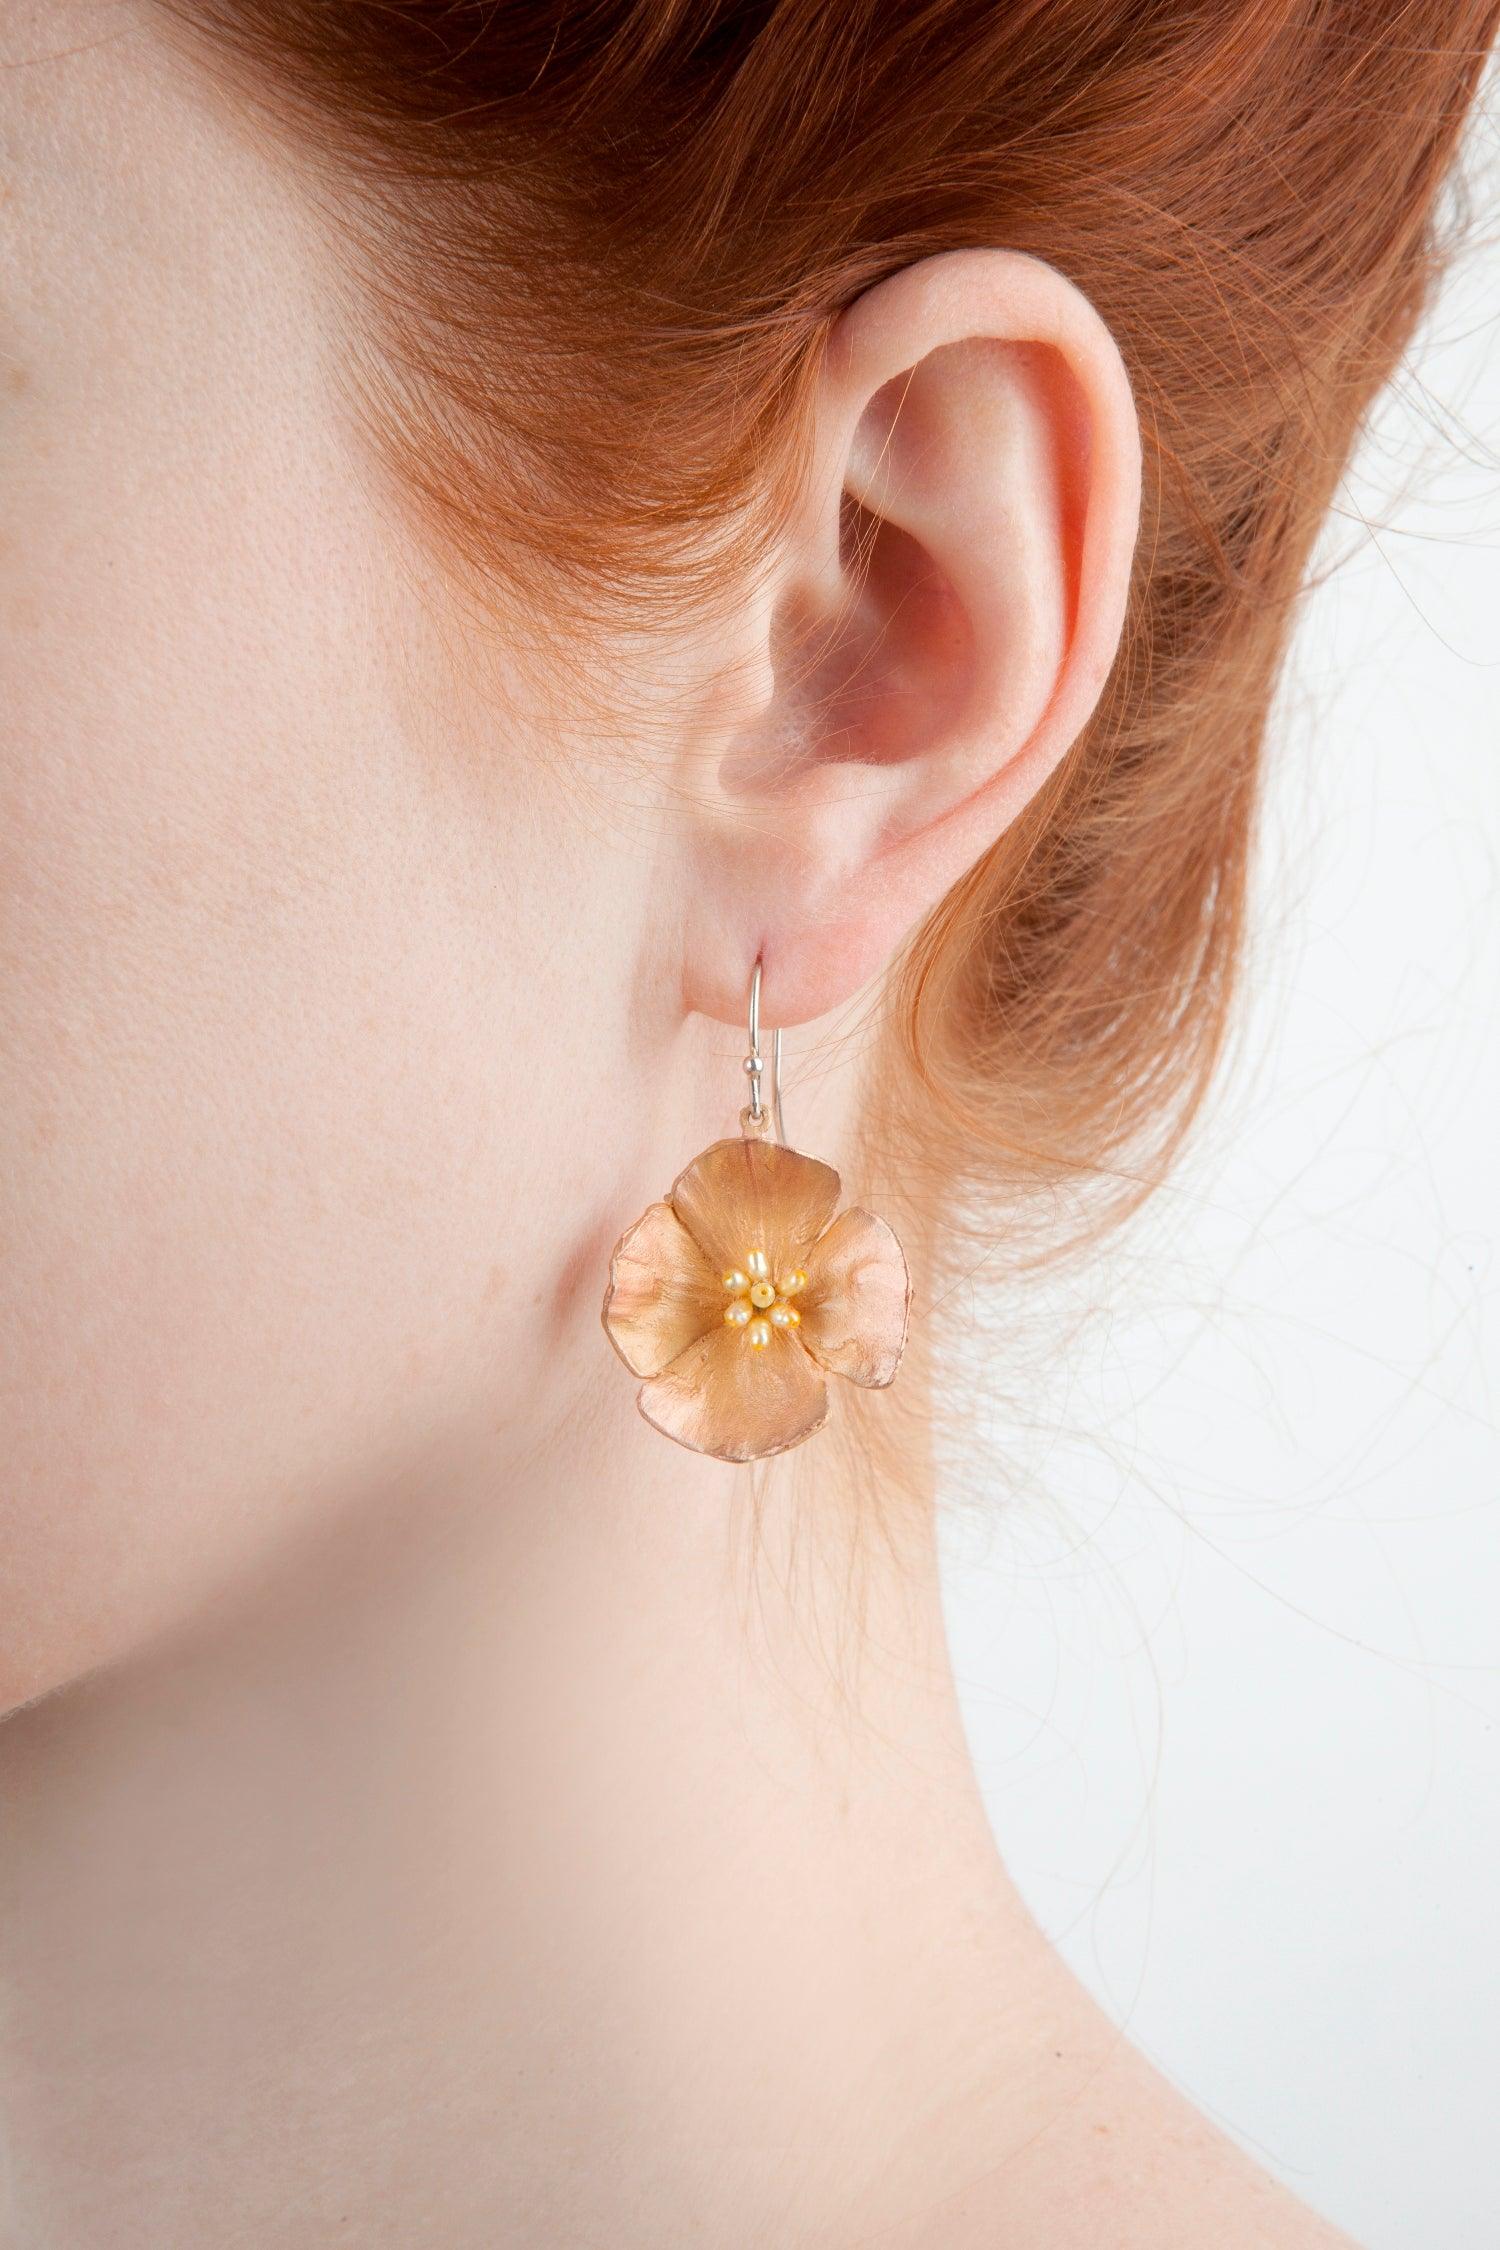 California Poppy Earrings - Large Flower - Michael Michaud Jewellery